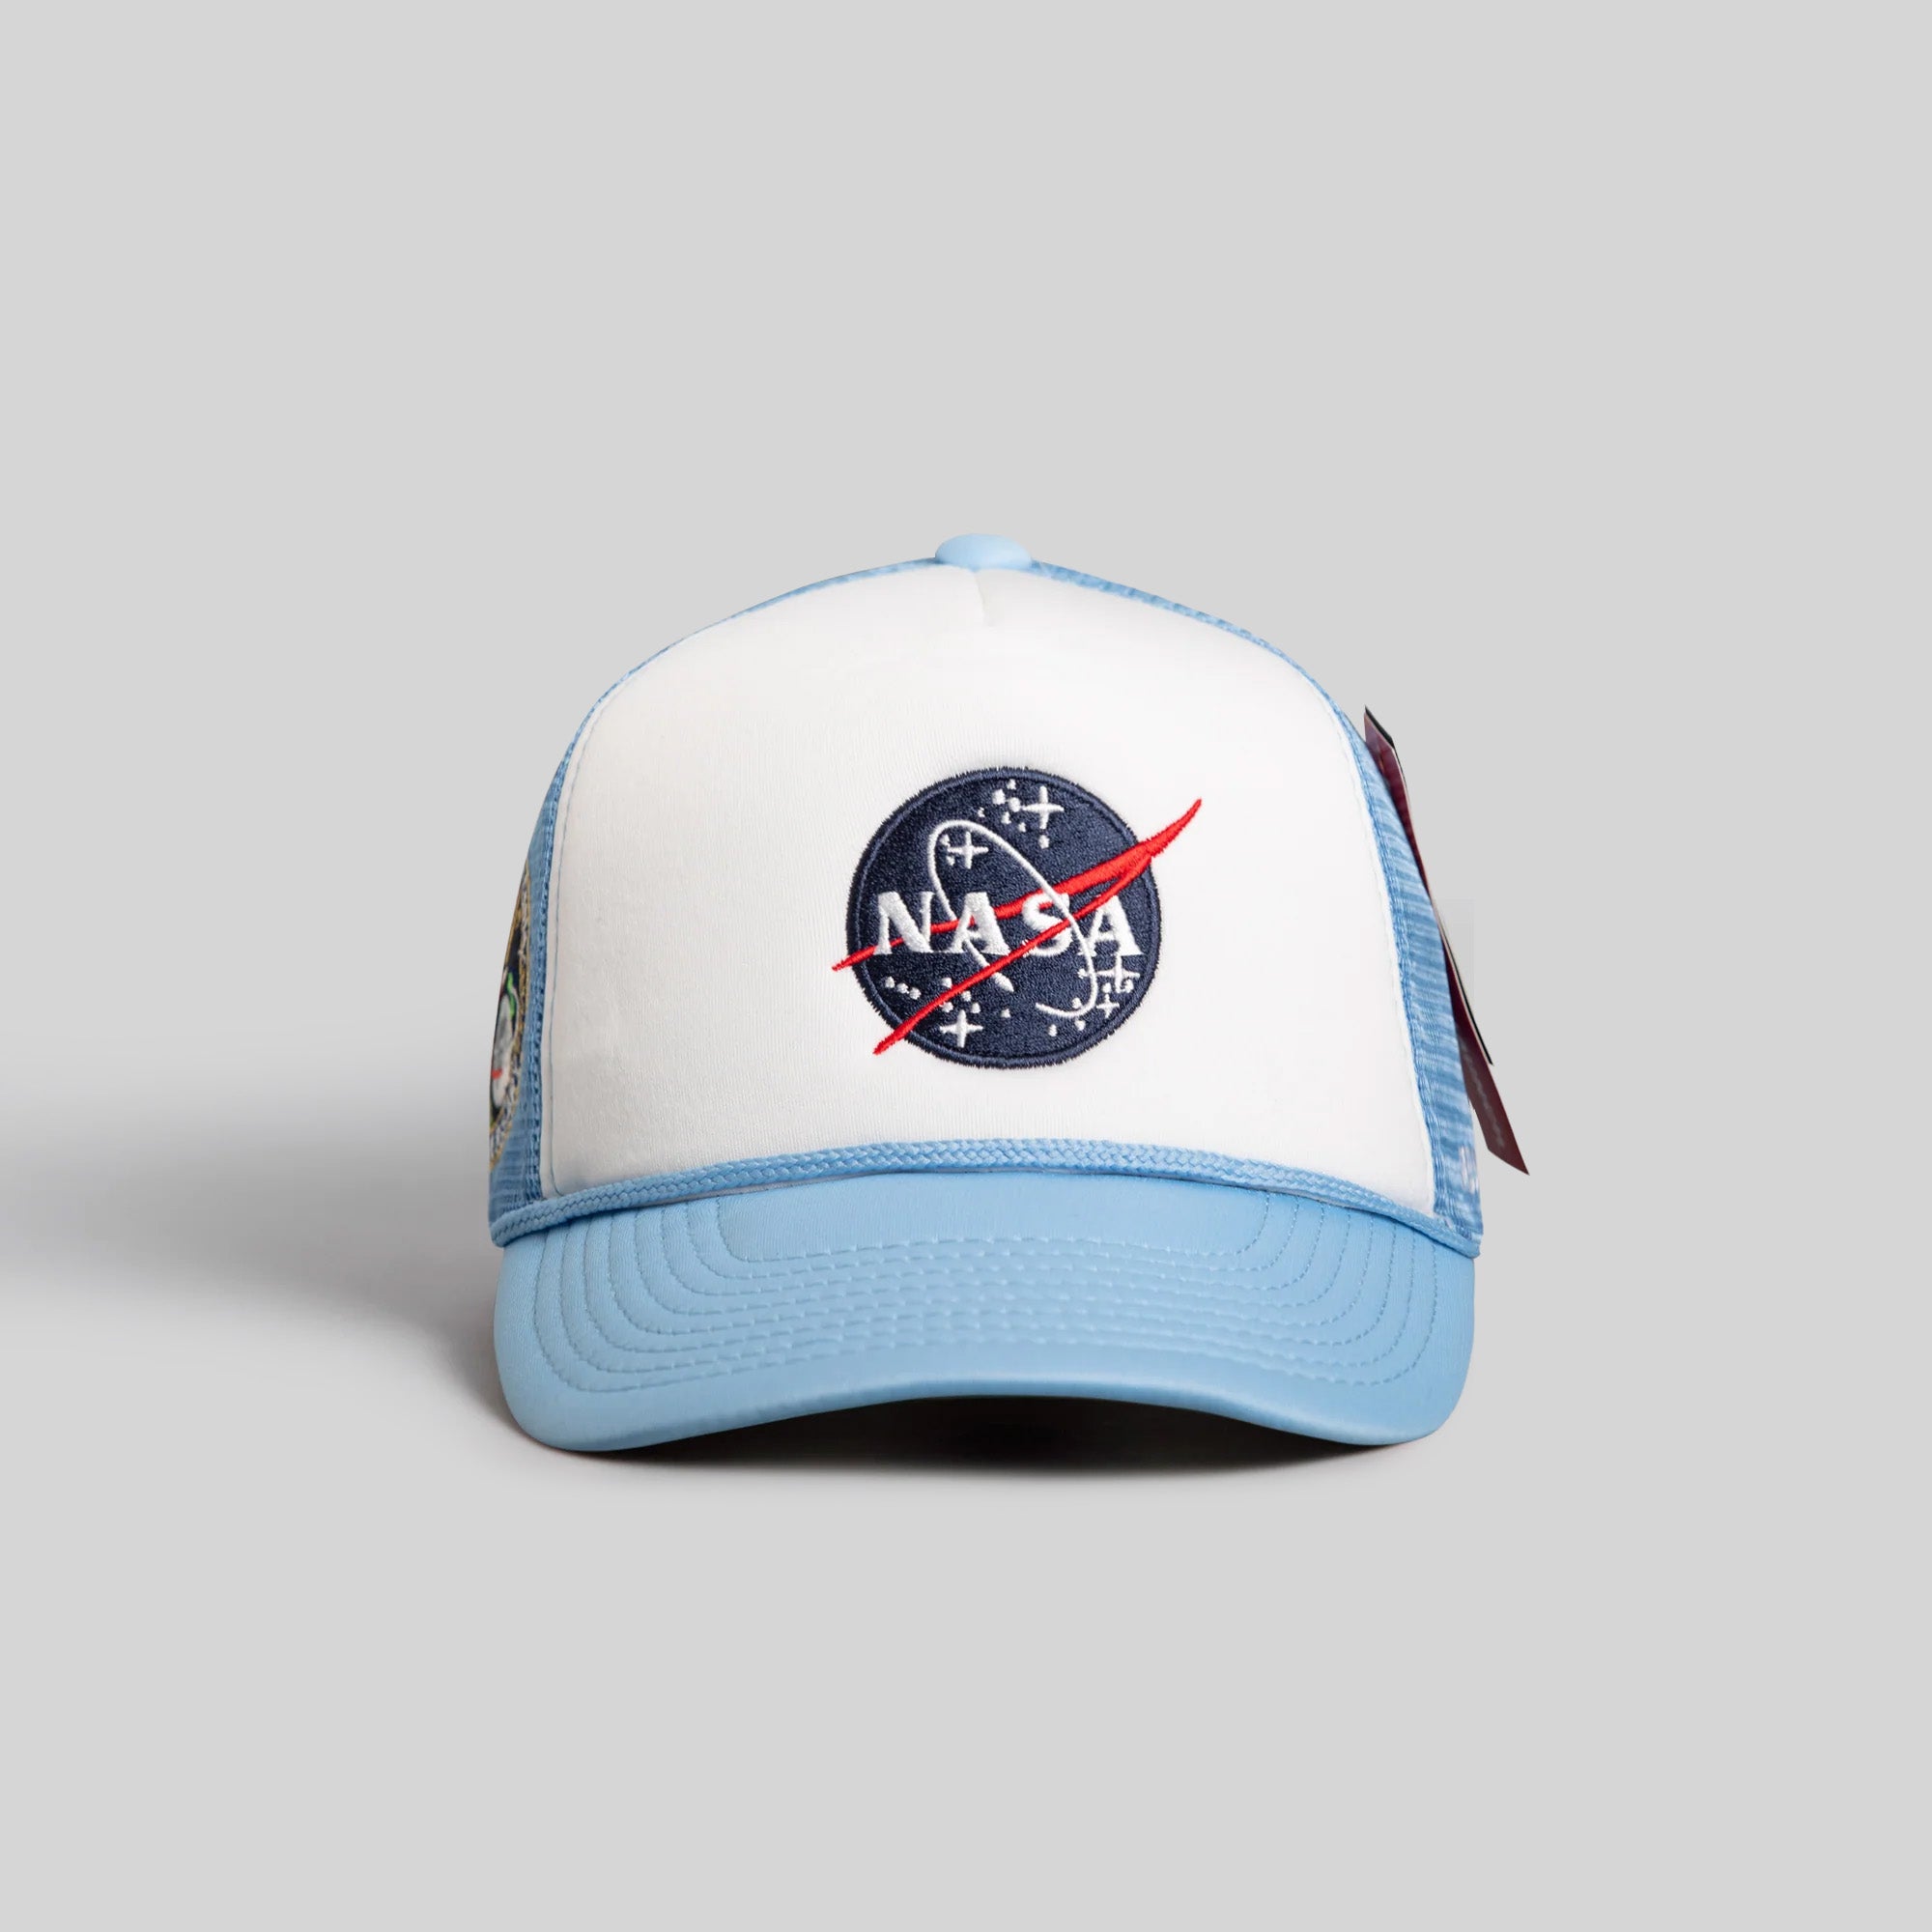 SKYLAB NASA 50TH ANNIVERSARY WHITE/UNI BLUE TRUCKER HAT